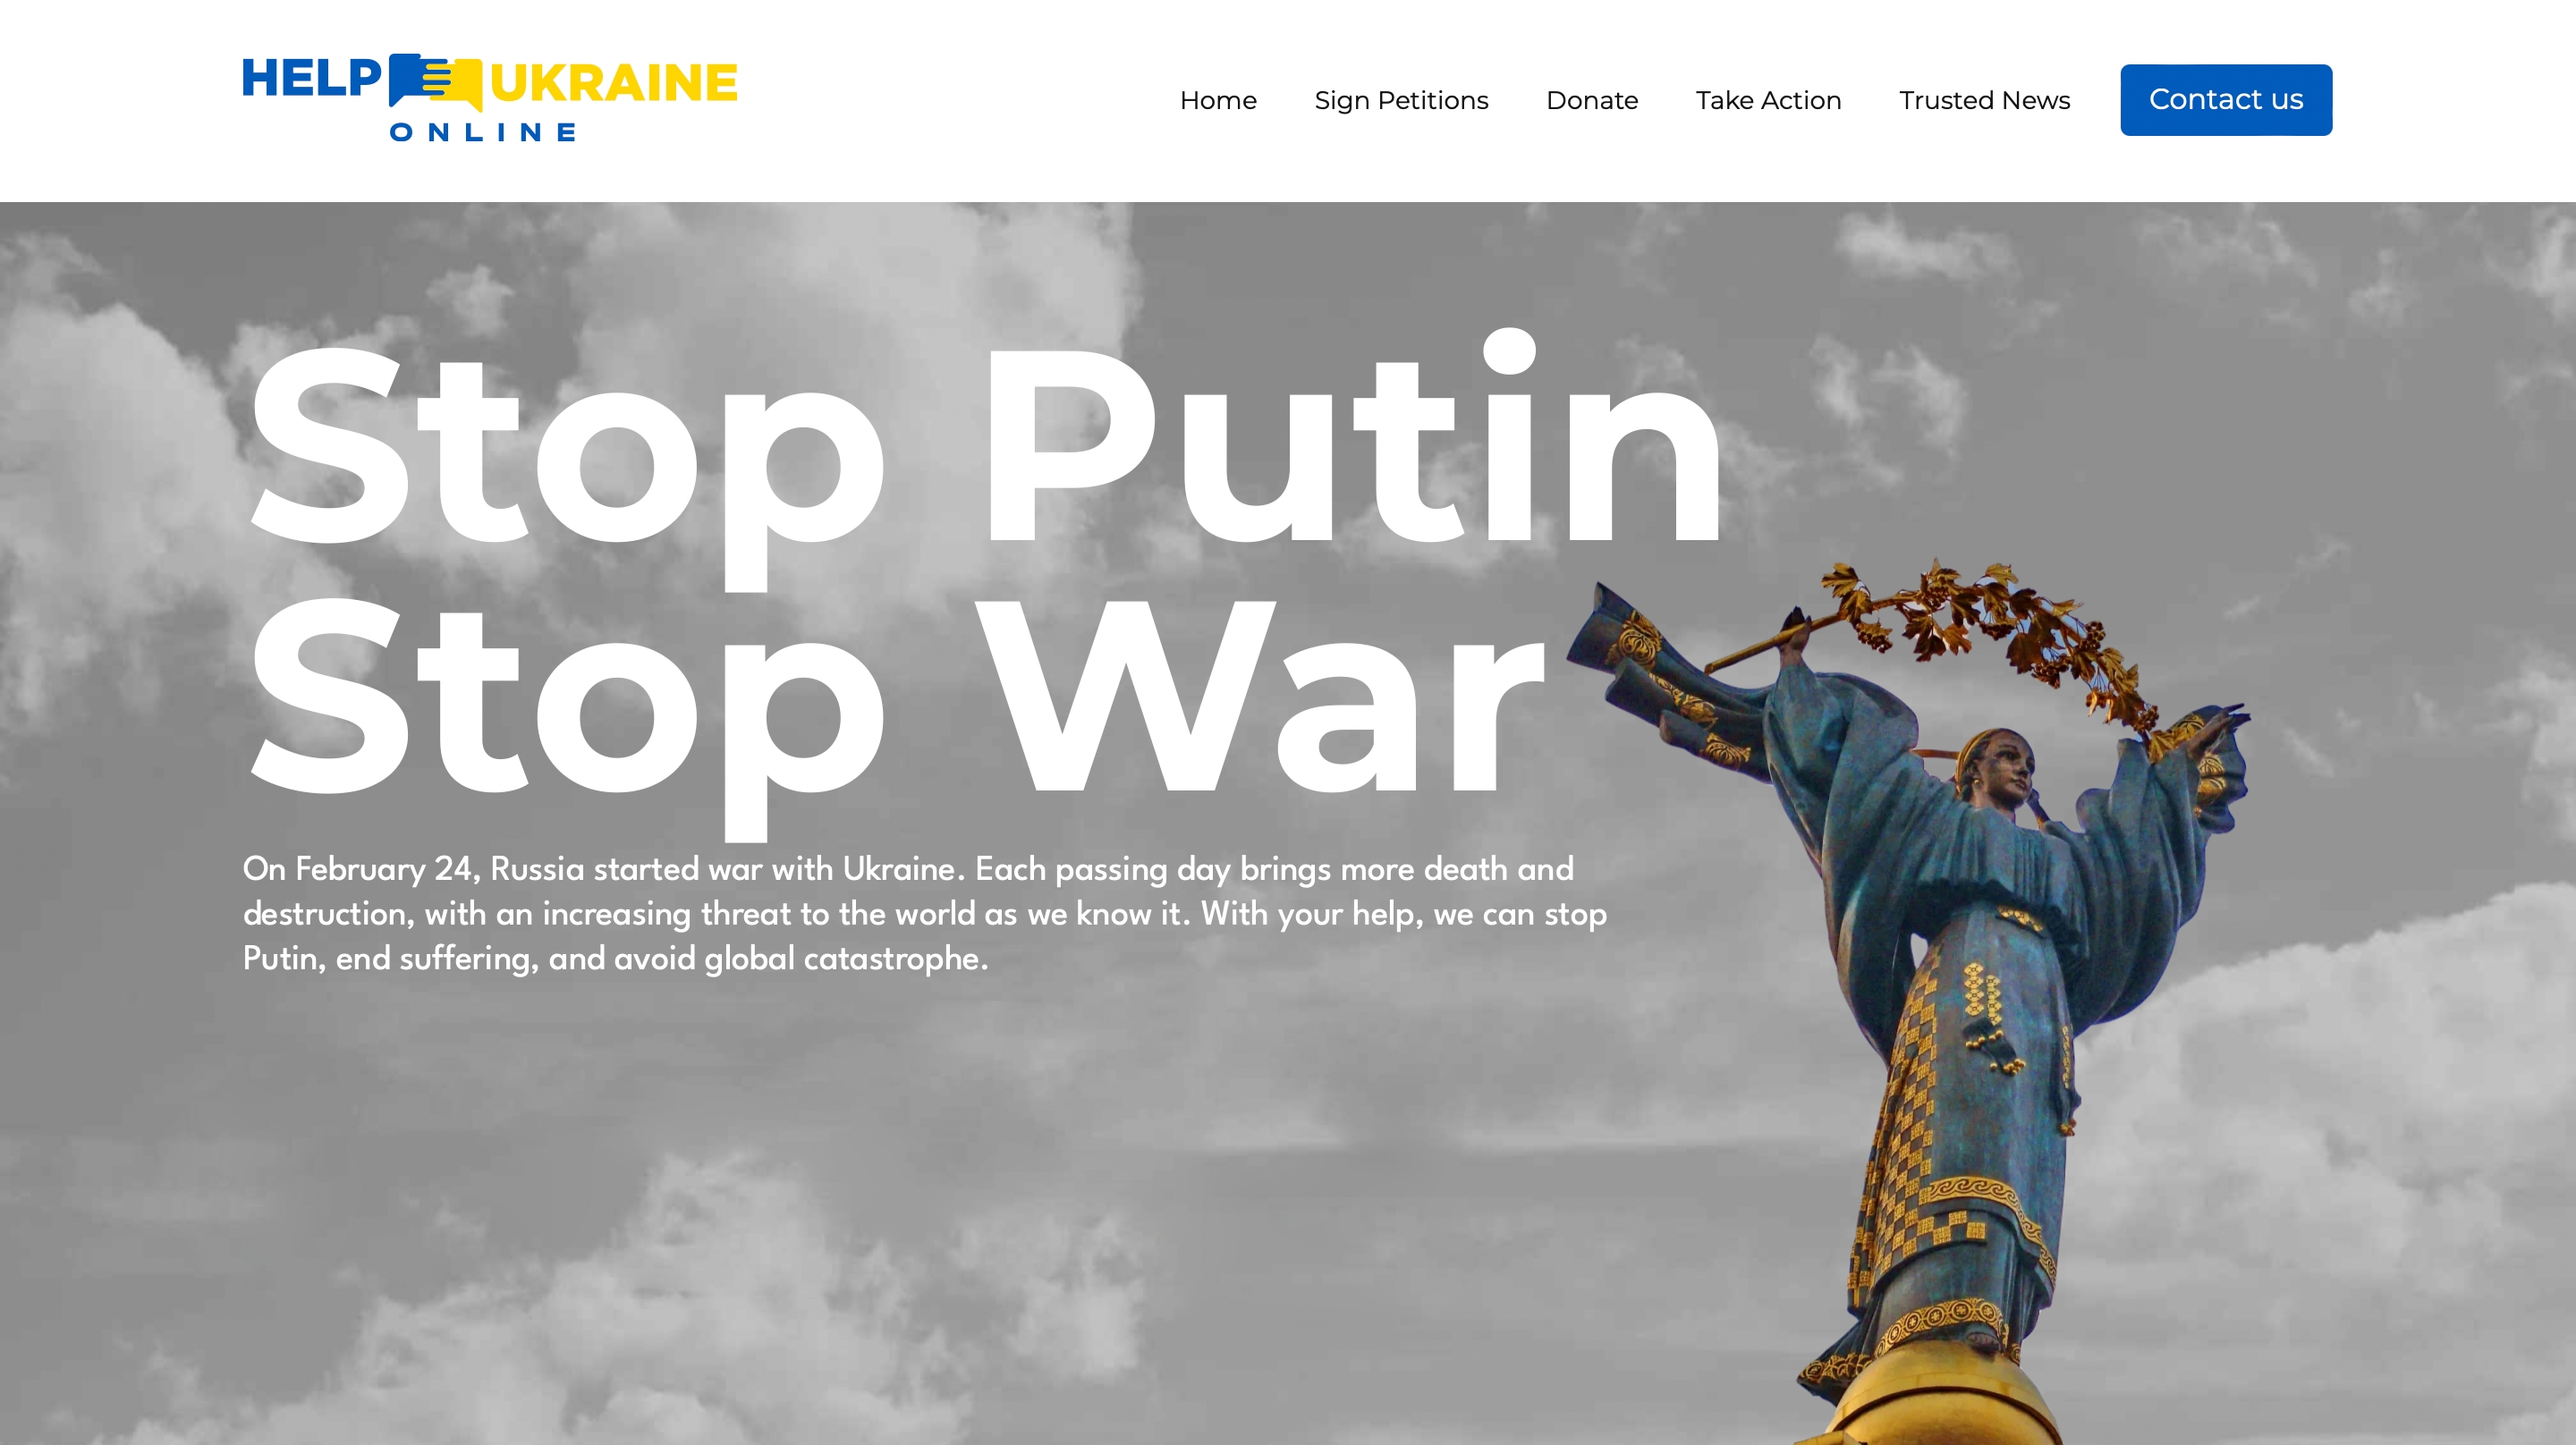 Help Ukraine Online: сайт для иностранцев, которые хотят помочь Украине во время войны